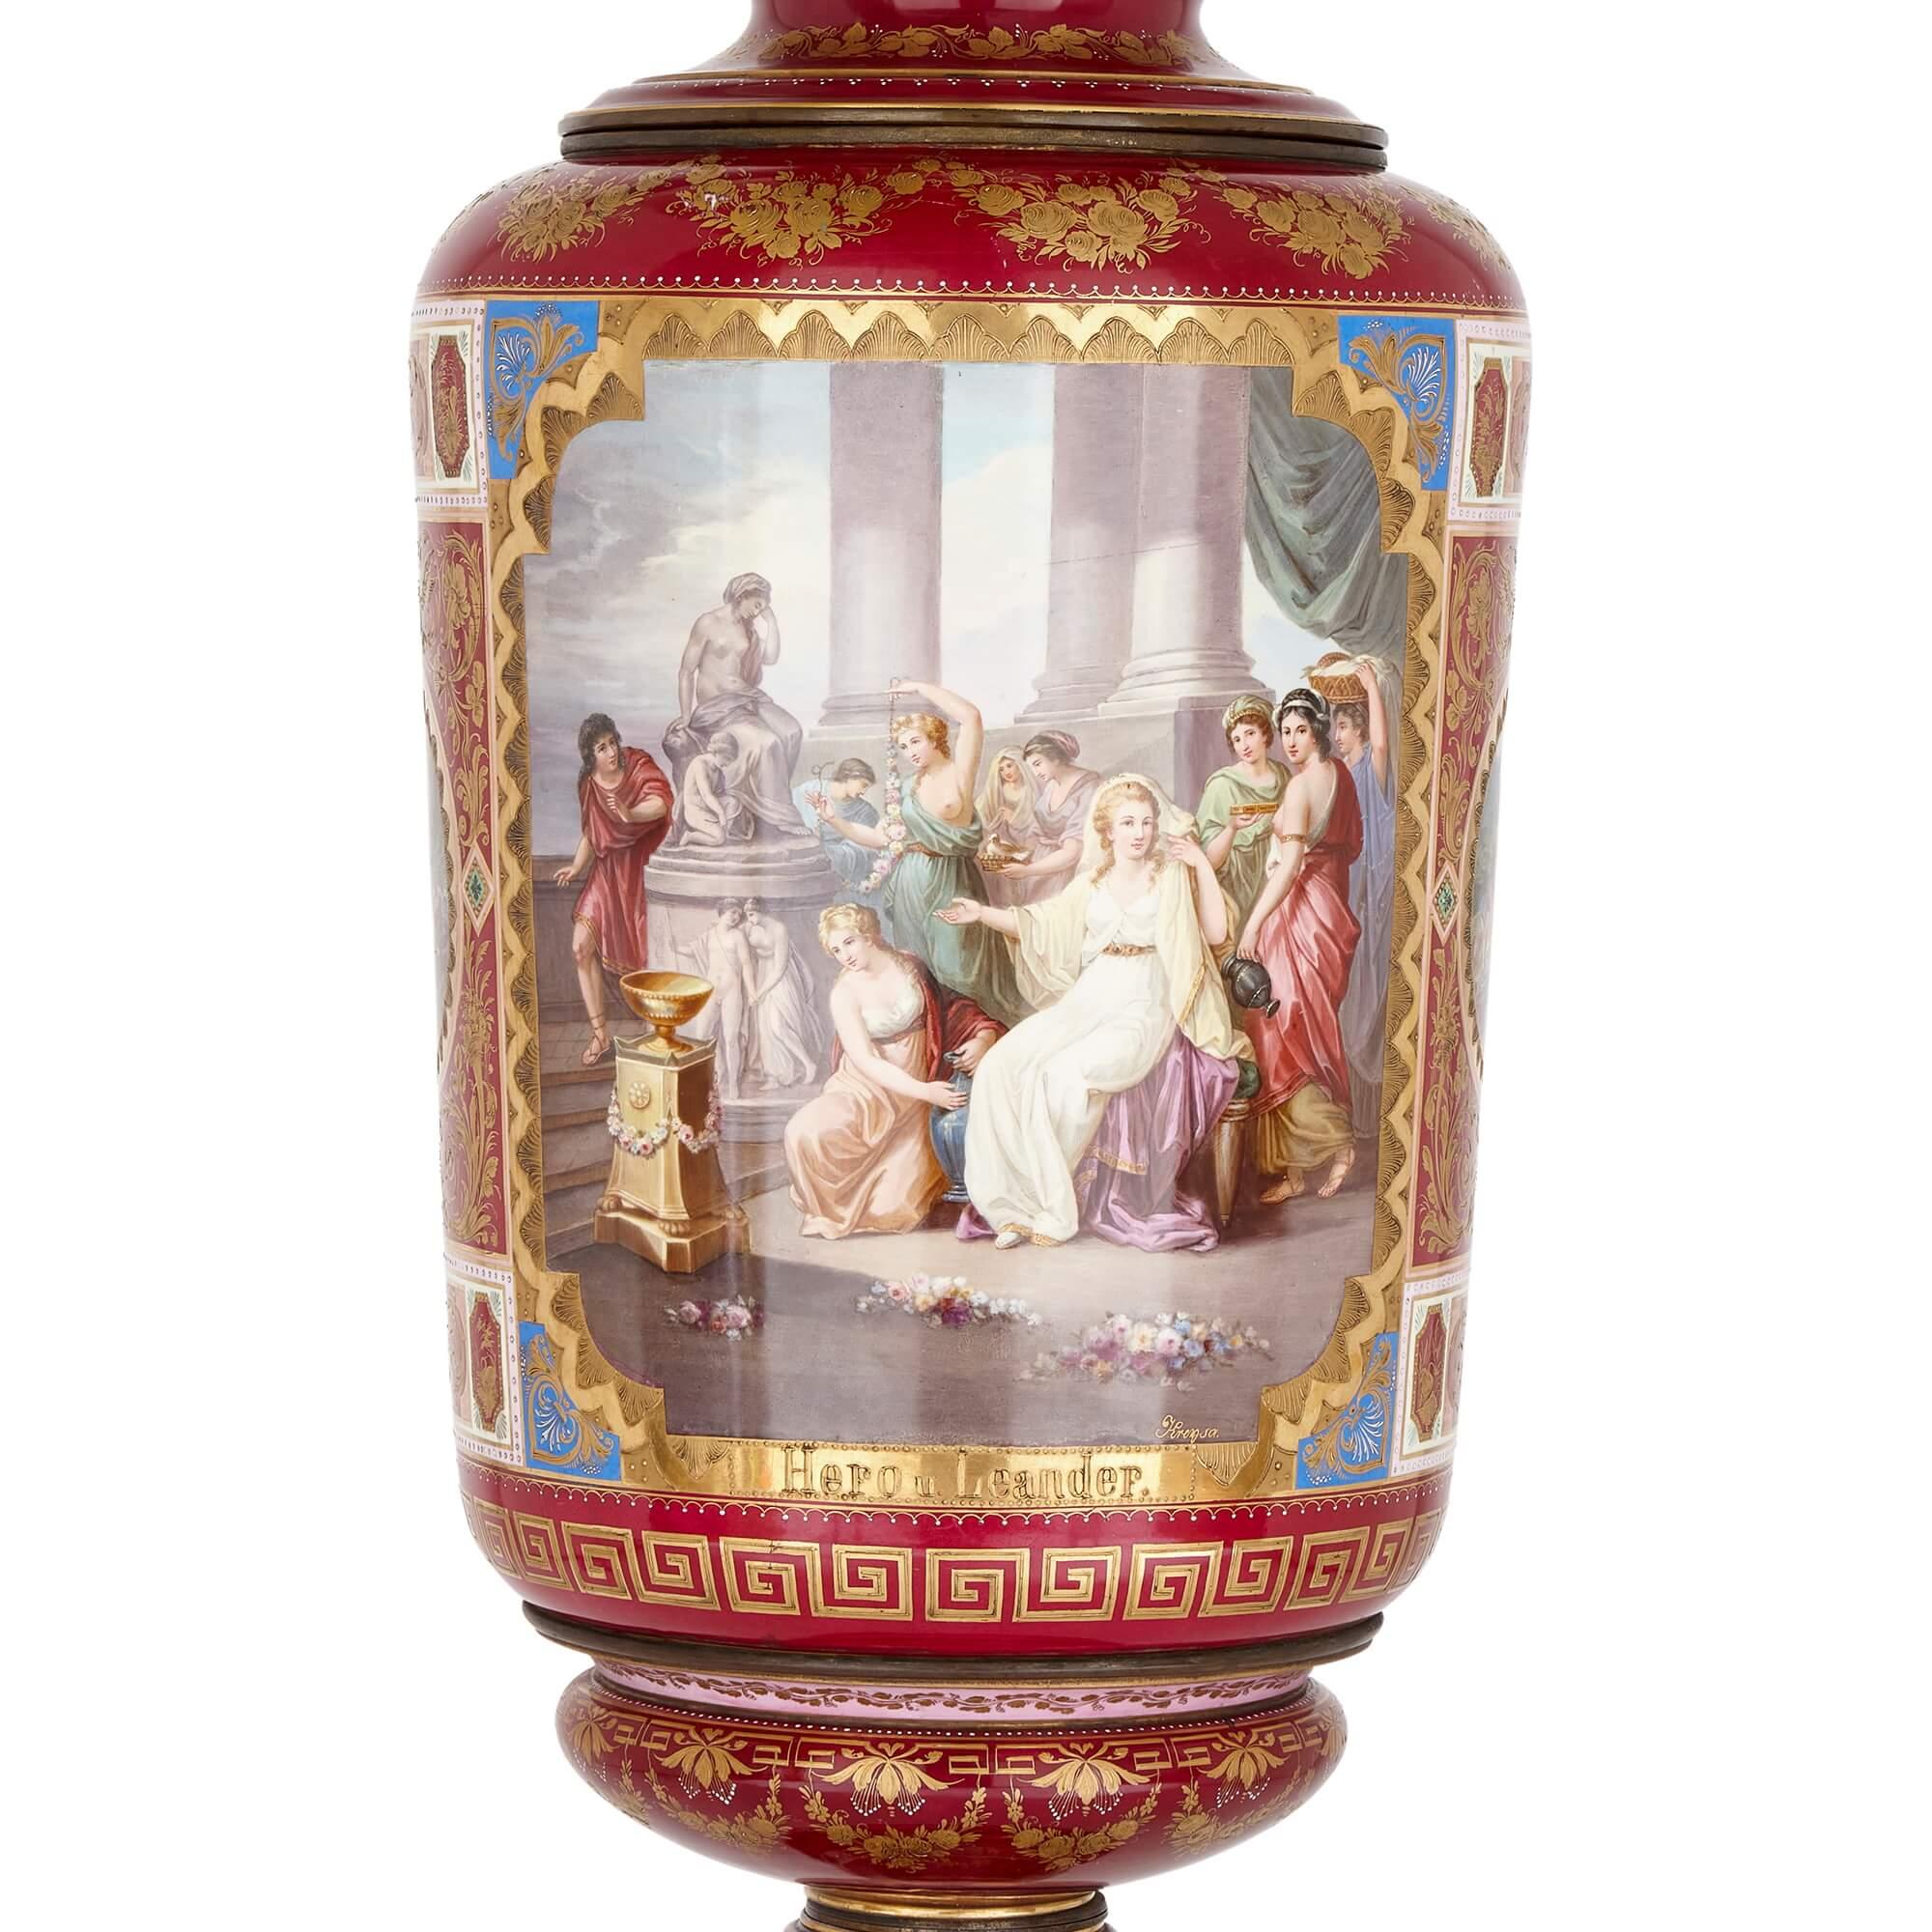 Vase monumental en porcelaine classique du Royaume de Vienne
Autriche, 19e siècle
Hauteur 152 cm, diamètre 41 cm

Ce magnifique vase a été fabriqué par la célèbre Manufacture royale de porcelaine de Vienne au XIXe siècle. De forme balustre et